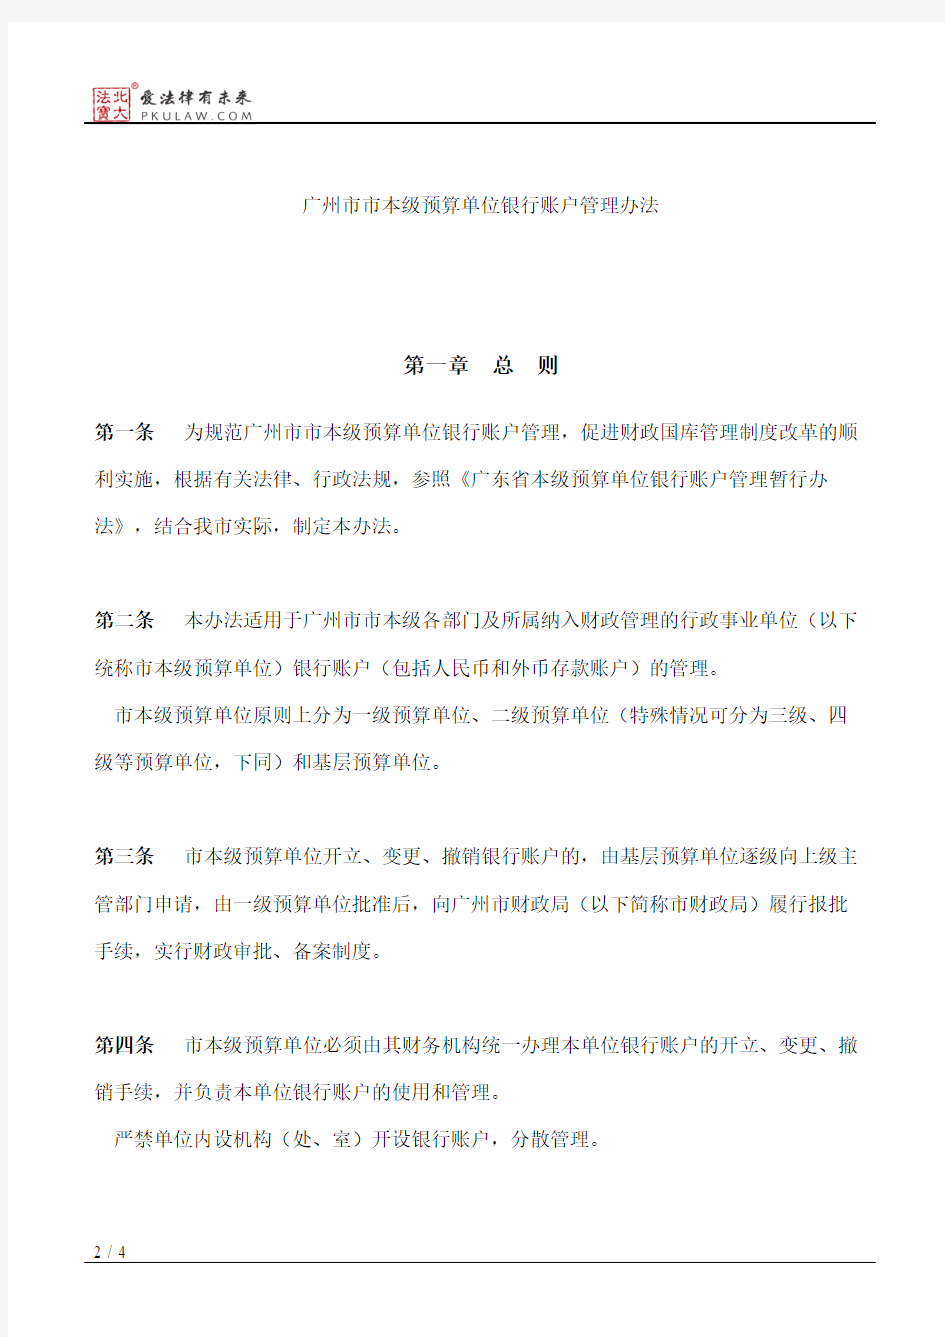 广州市财政局、中国人民银行广州分行关于印发《广州市市本级预算